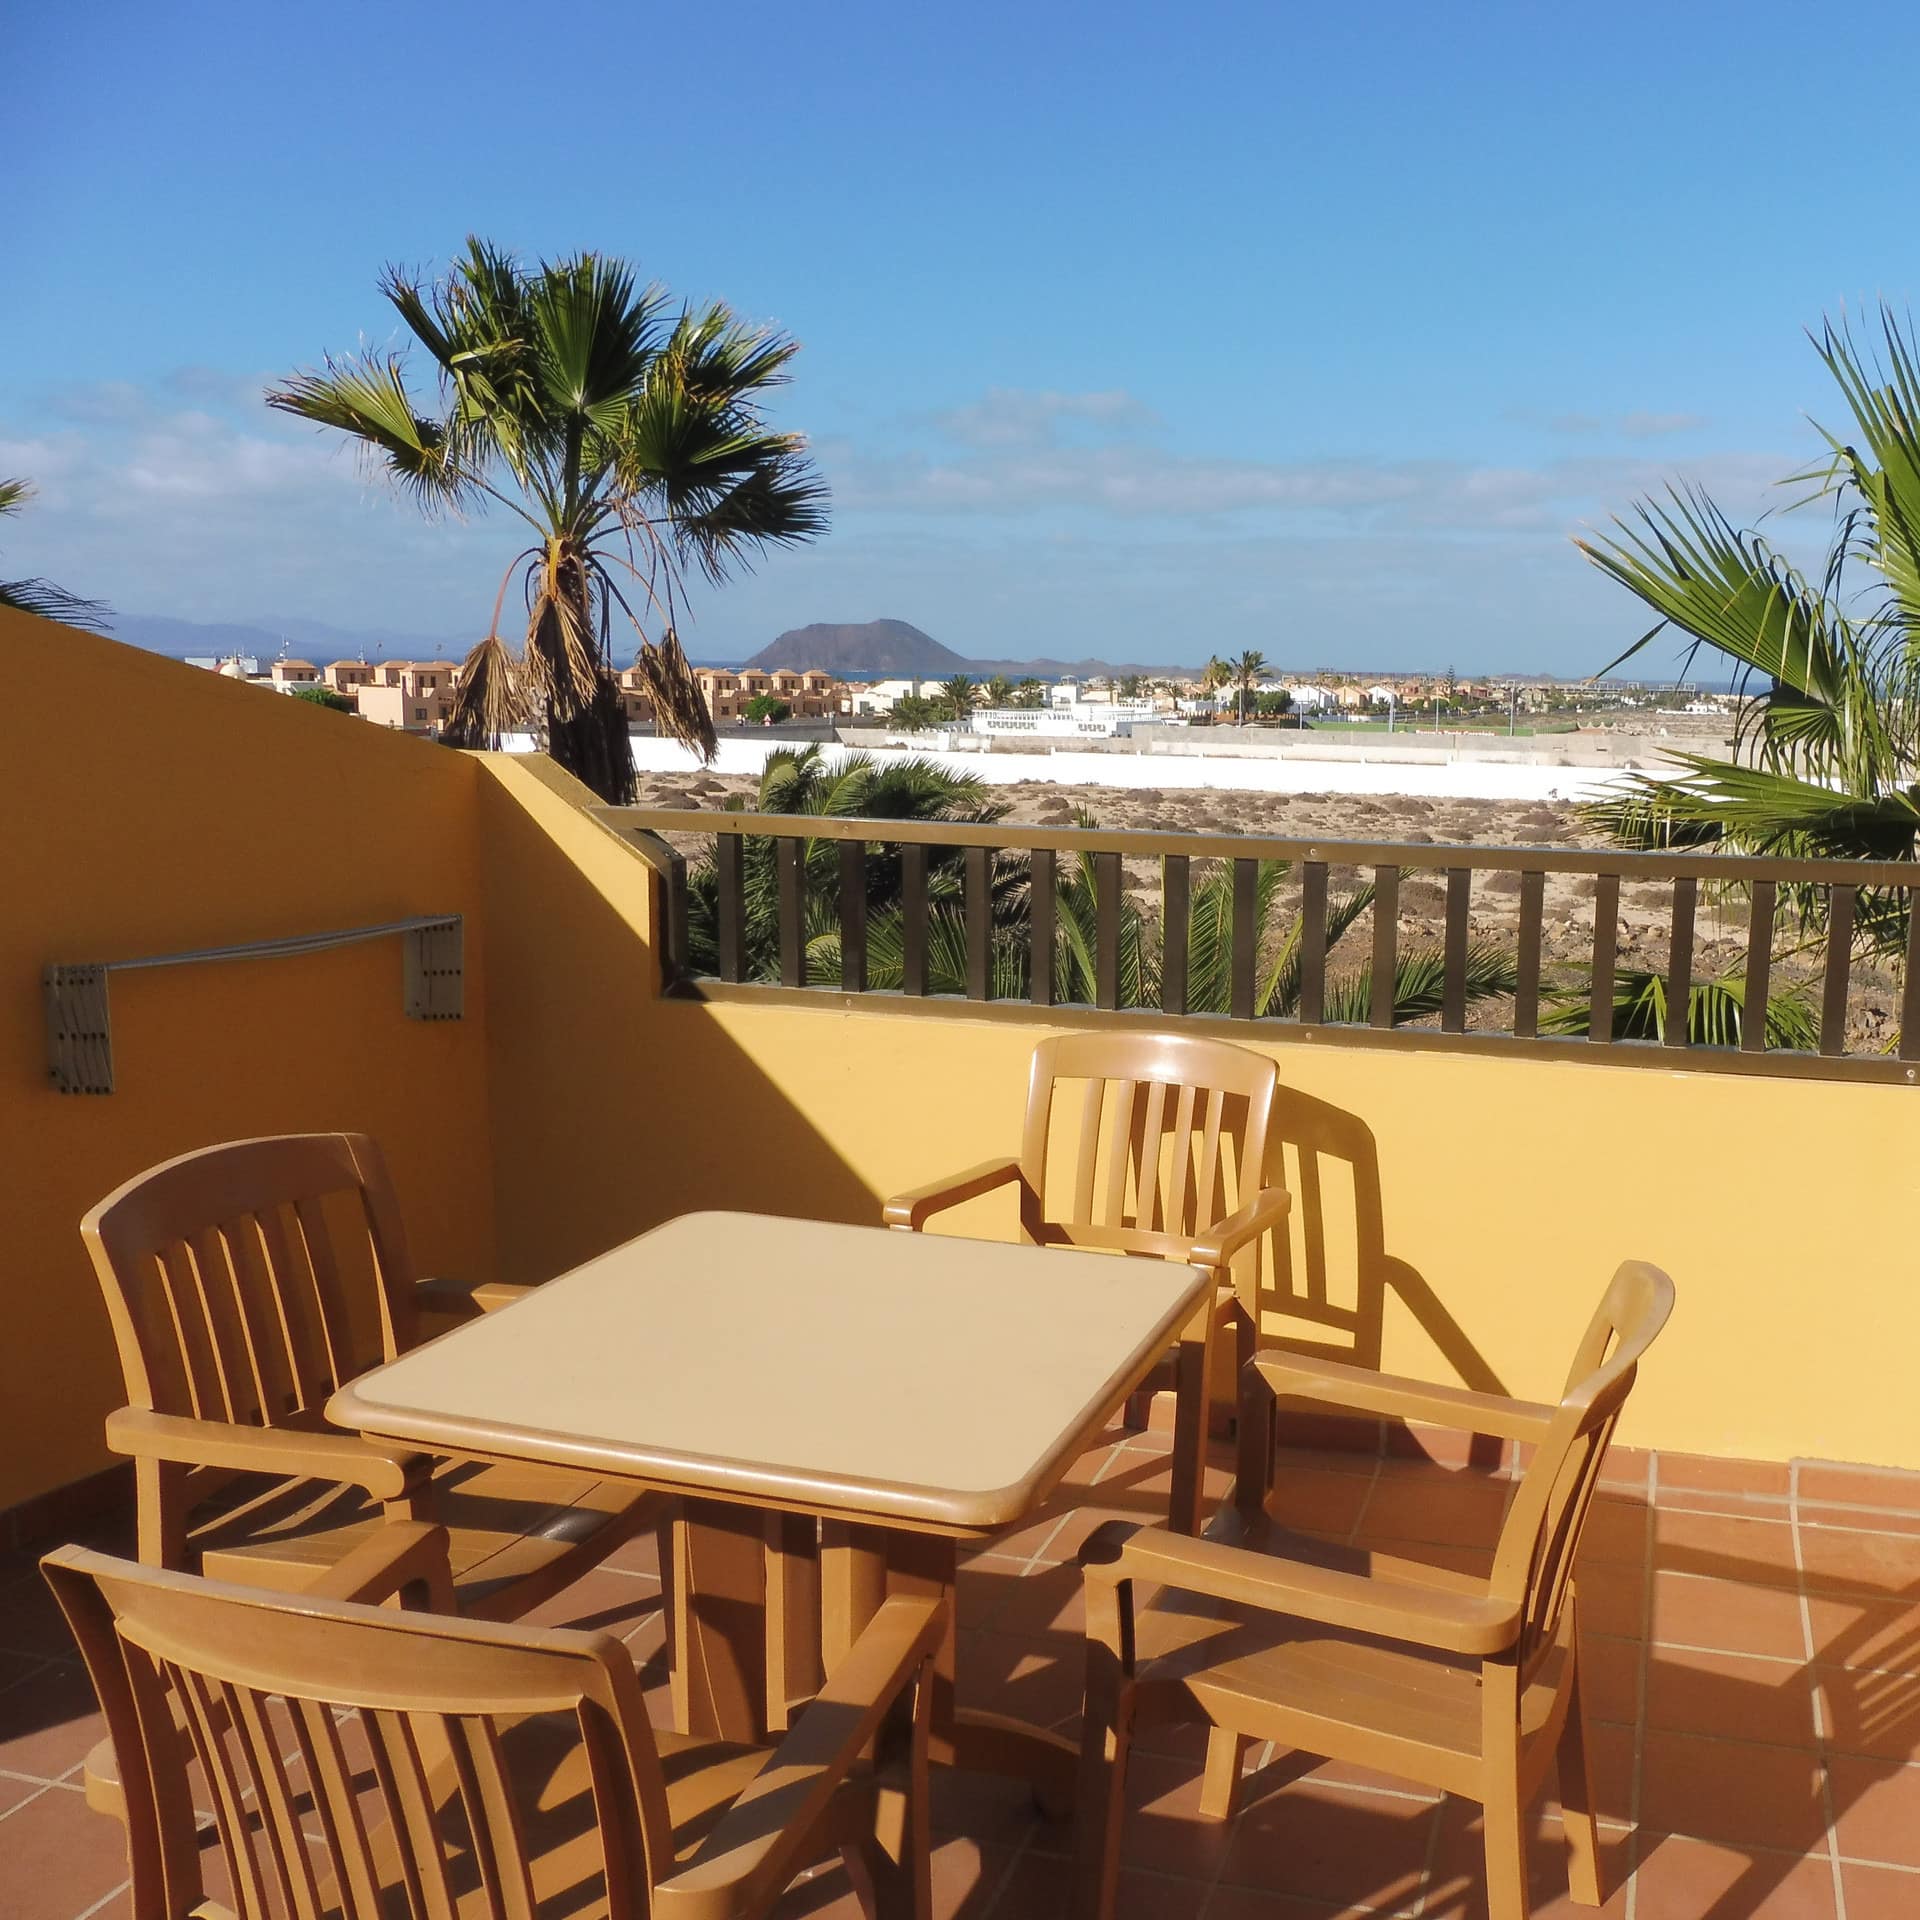 Ferienwohnung auf Fuerteventura mit großem Balkon, darauf Tisch und Stühle, und Weitblick übers Meer und eine Insel